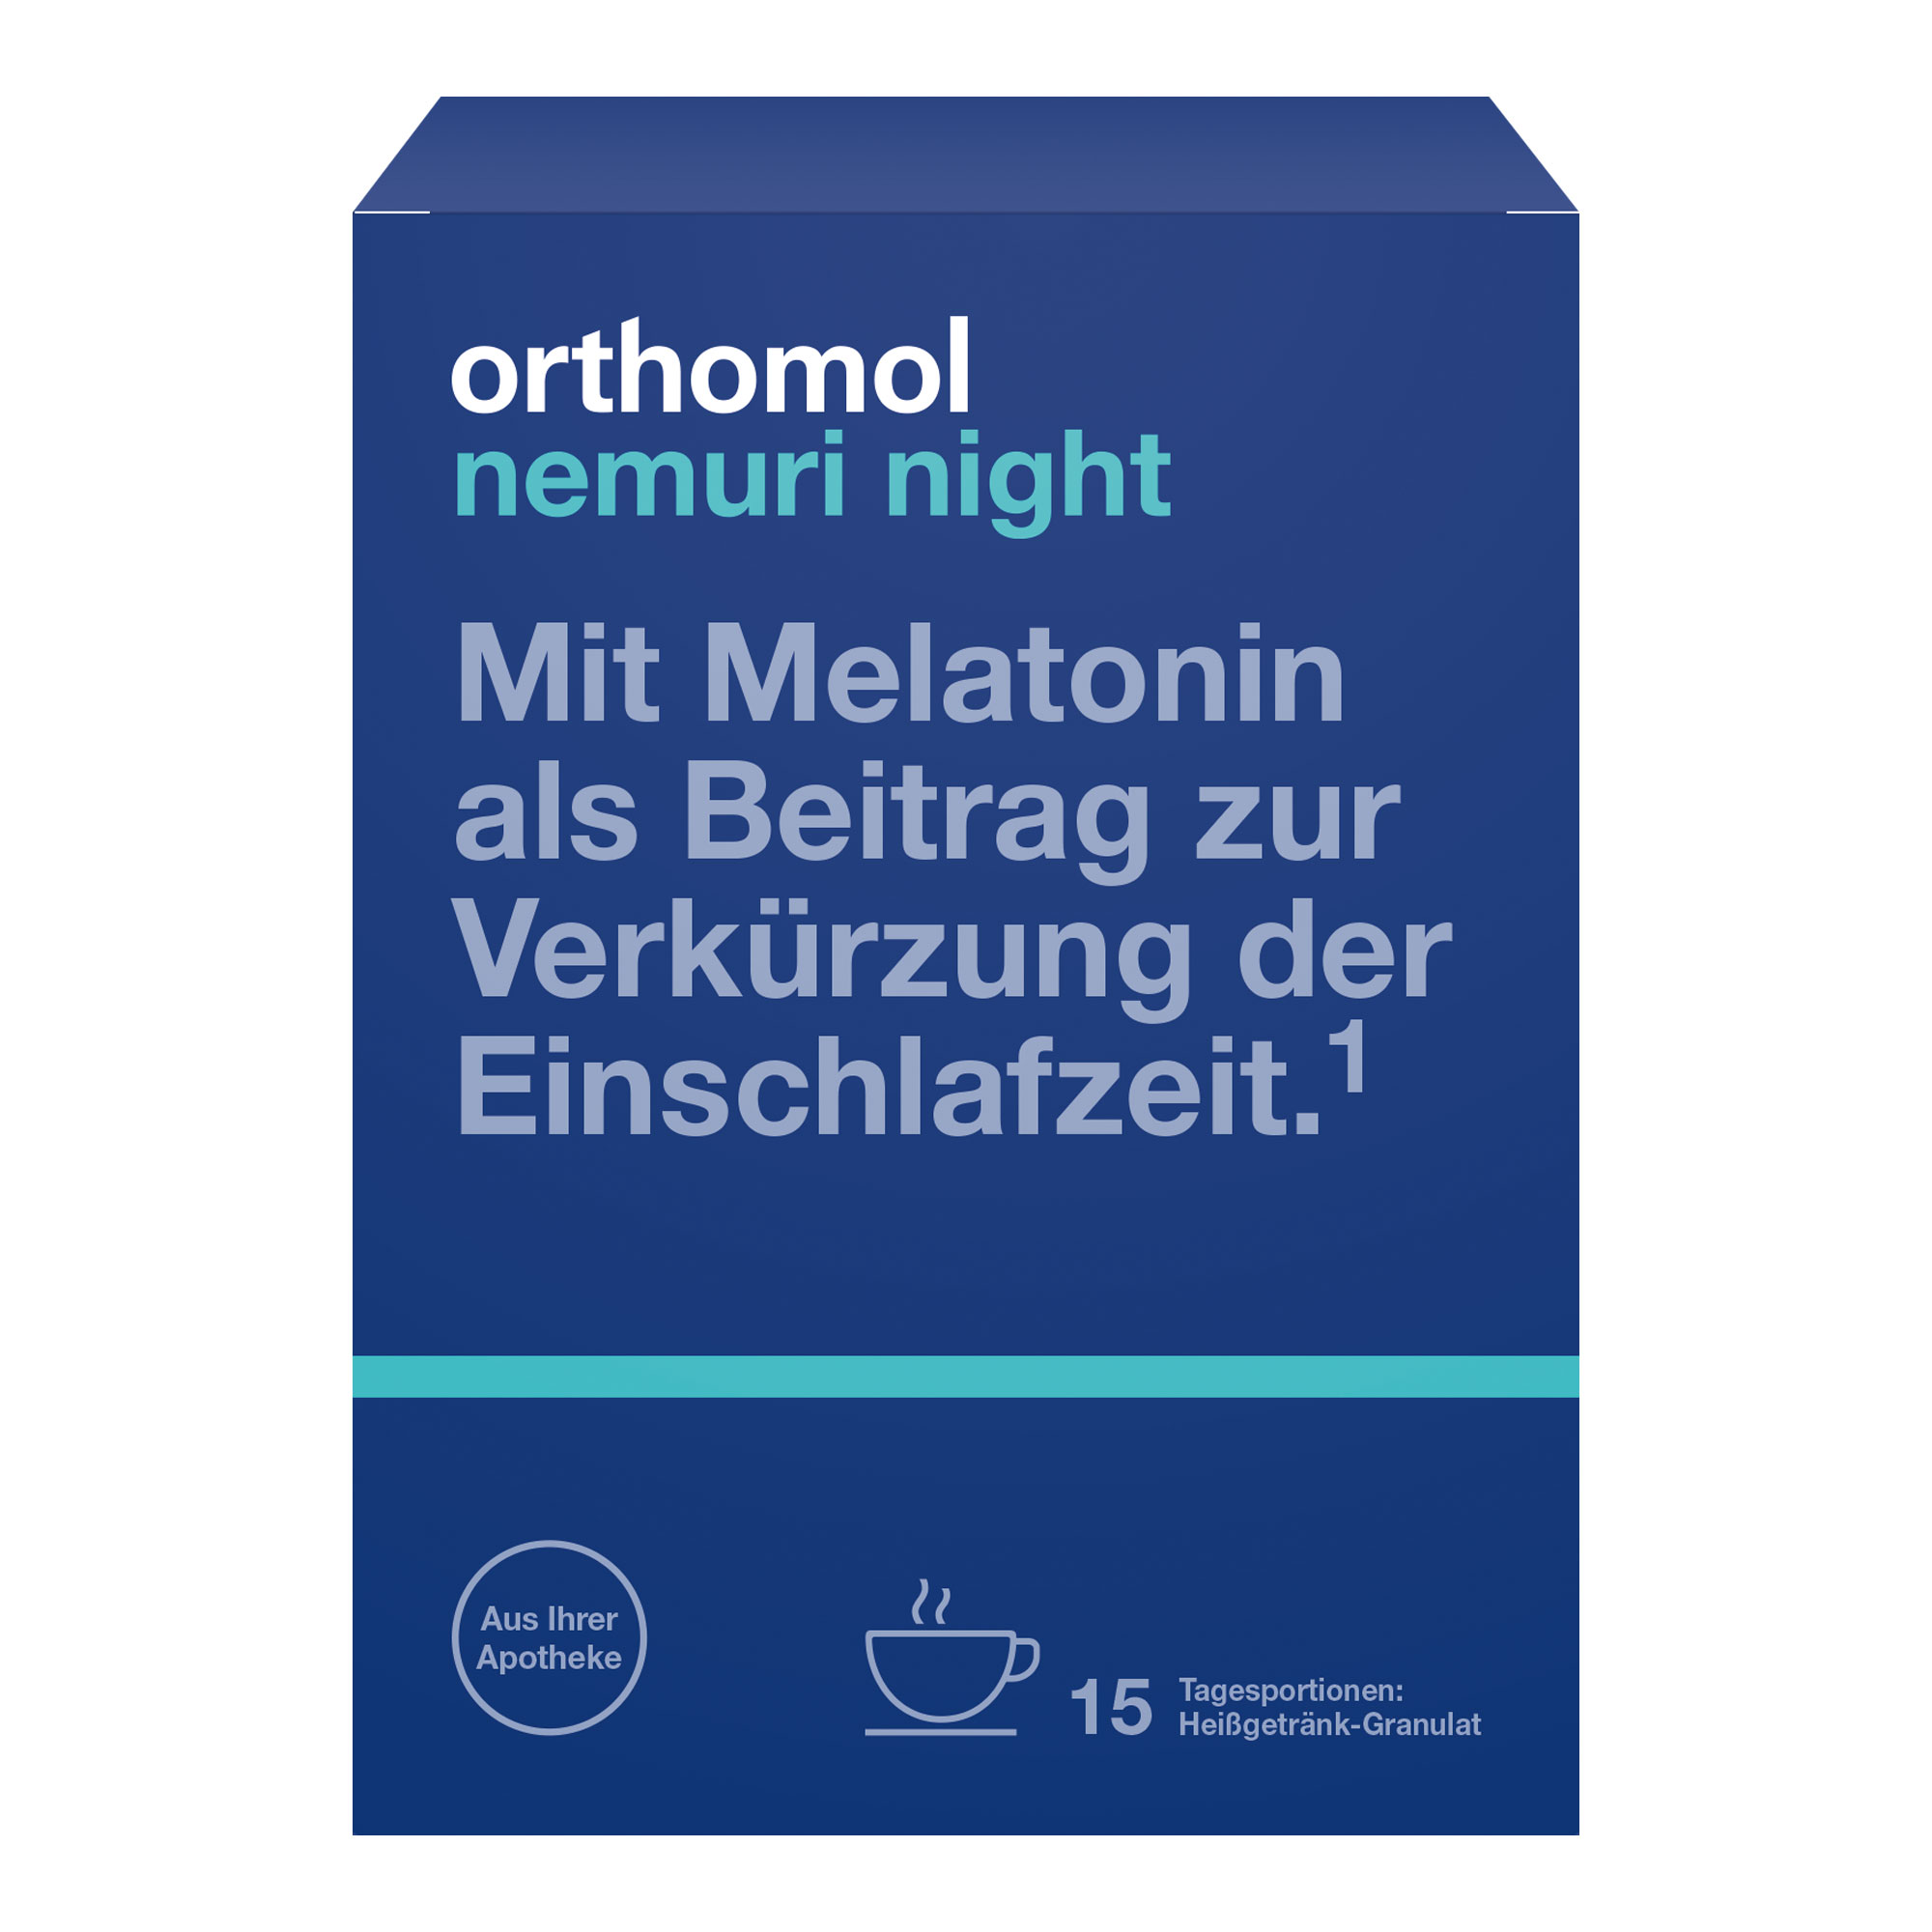 Nahrungsergänzungsmittel mit Melatonin, Melissenblatt-Extrakt, Hopfensamen-Extrakt, Glycin und L-Tryptophan.